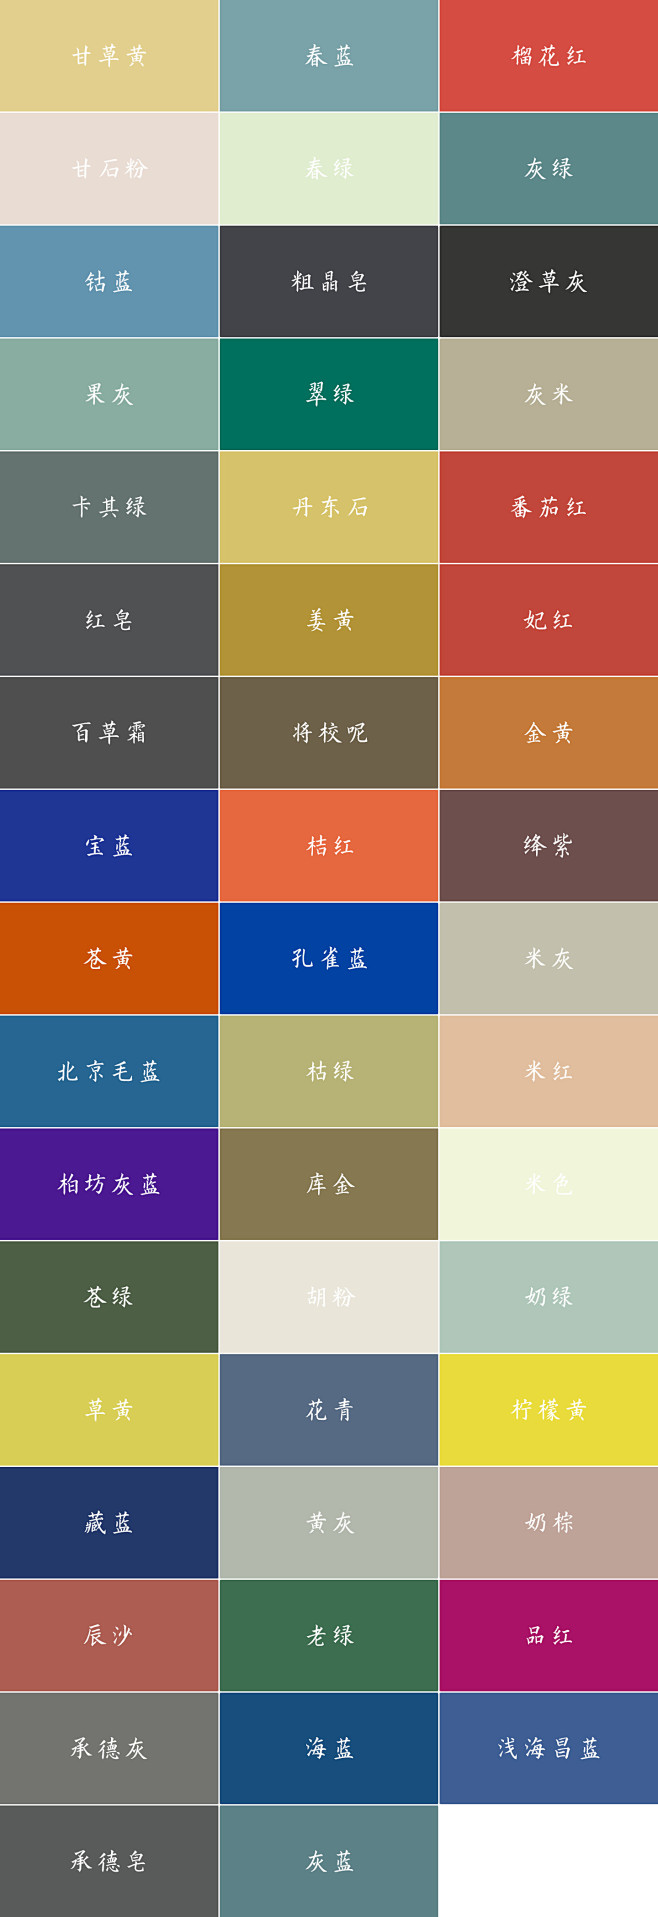 中国传统色彩 & 名称